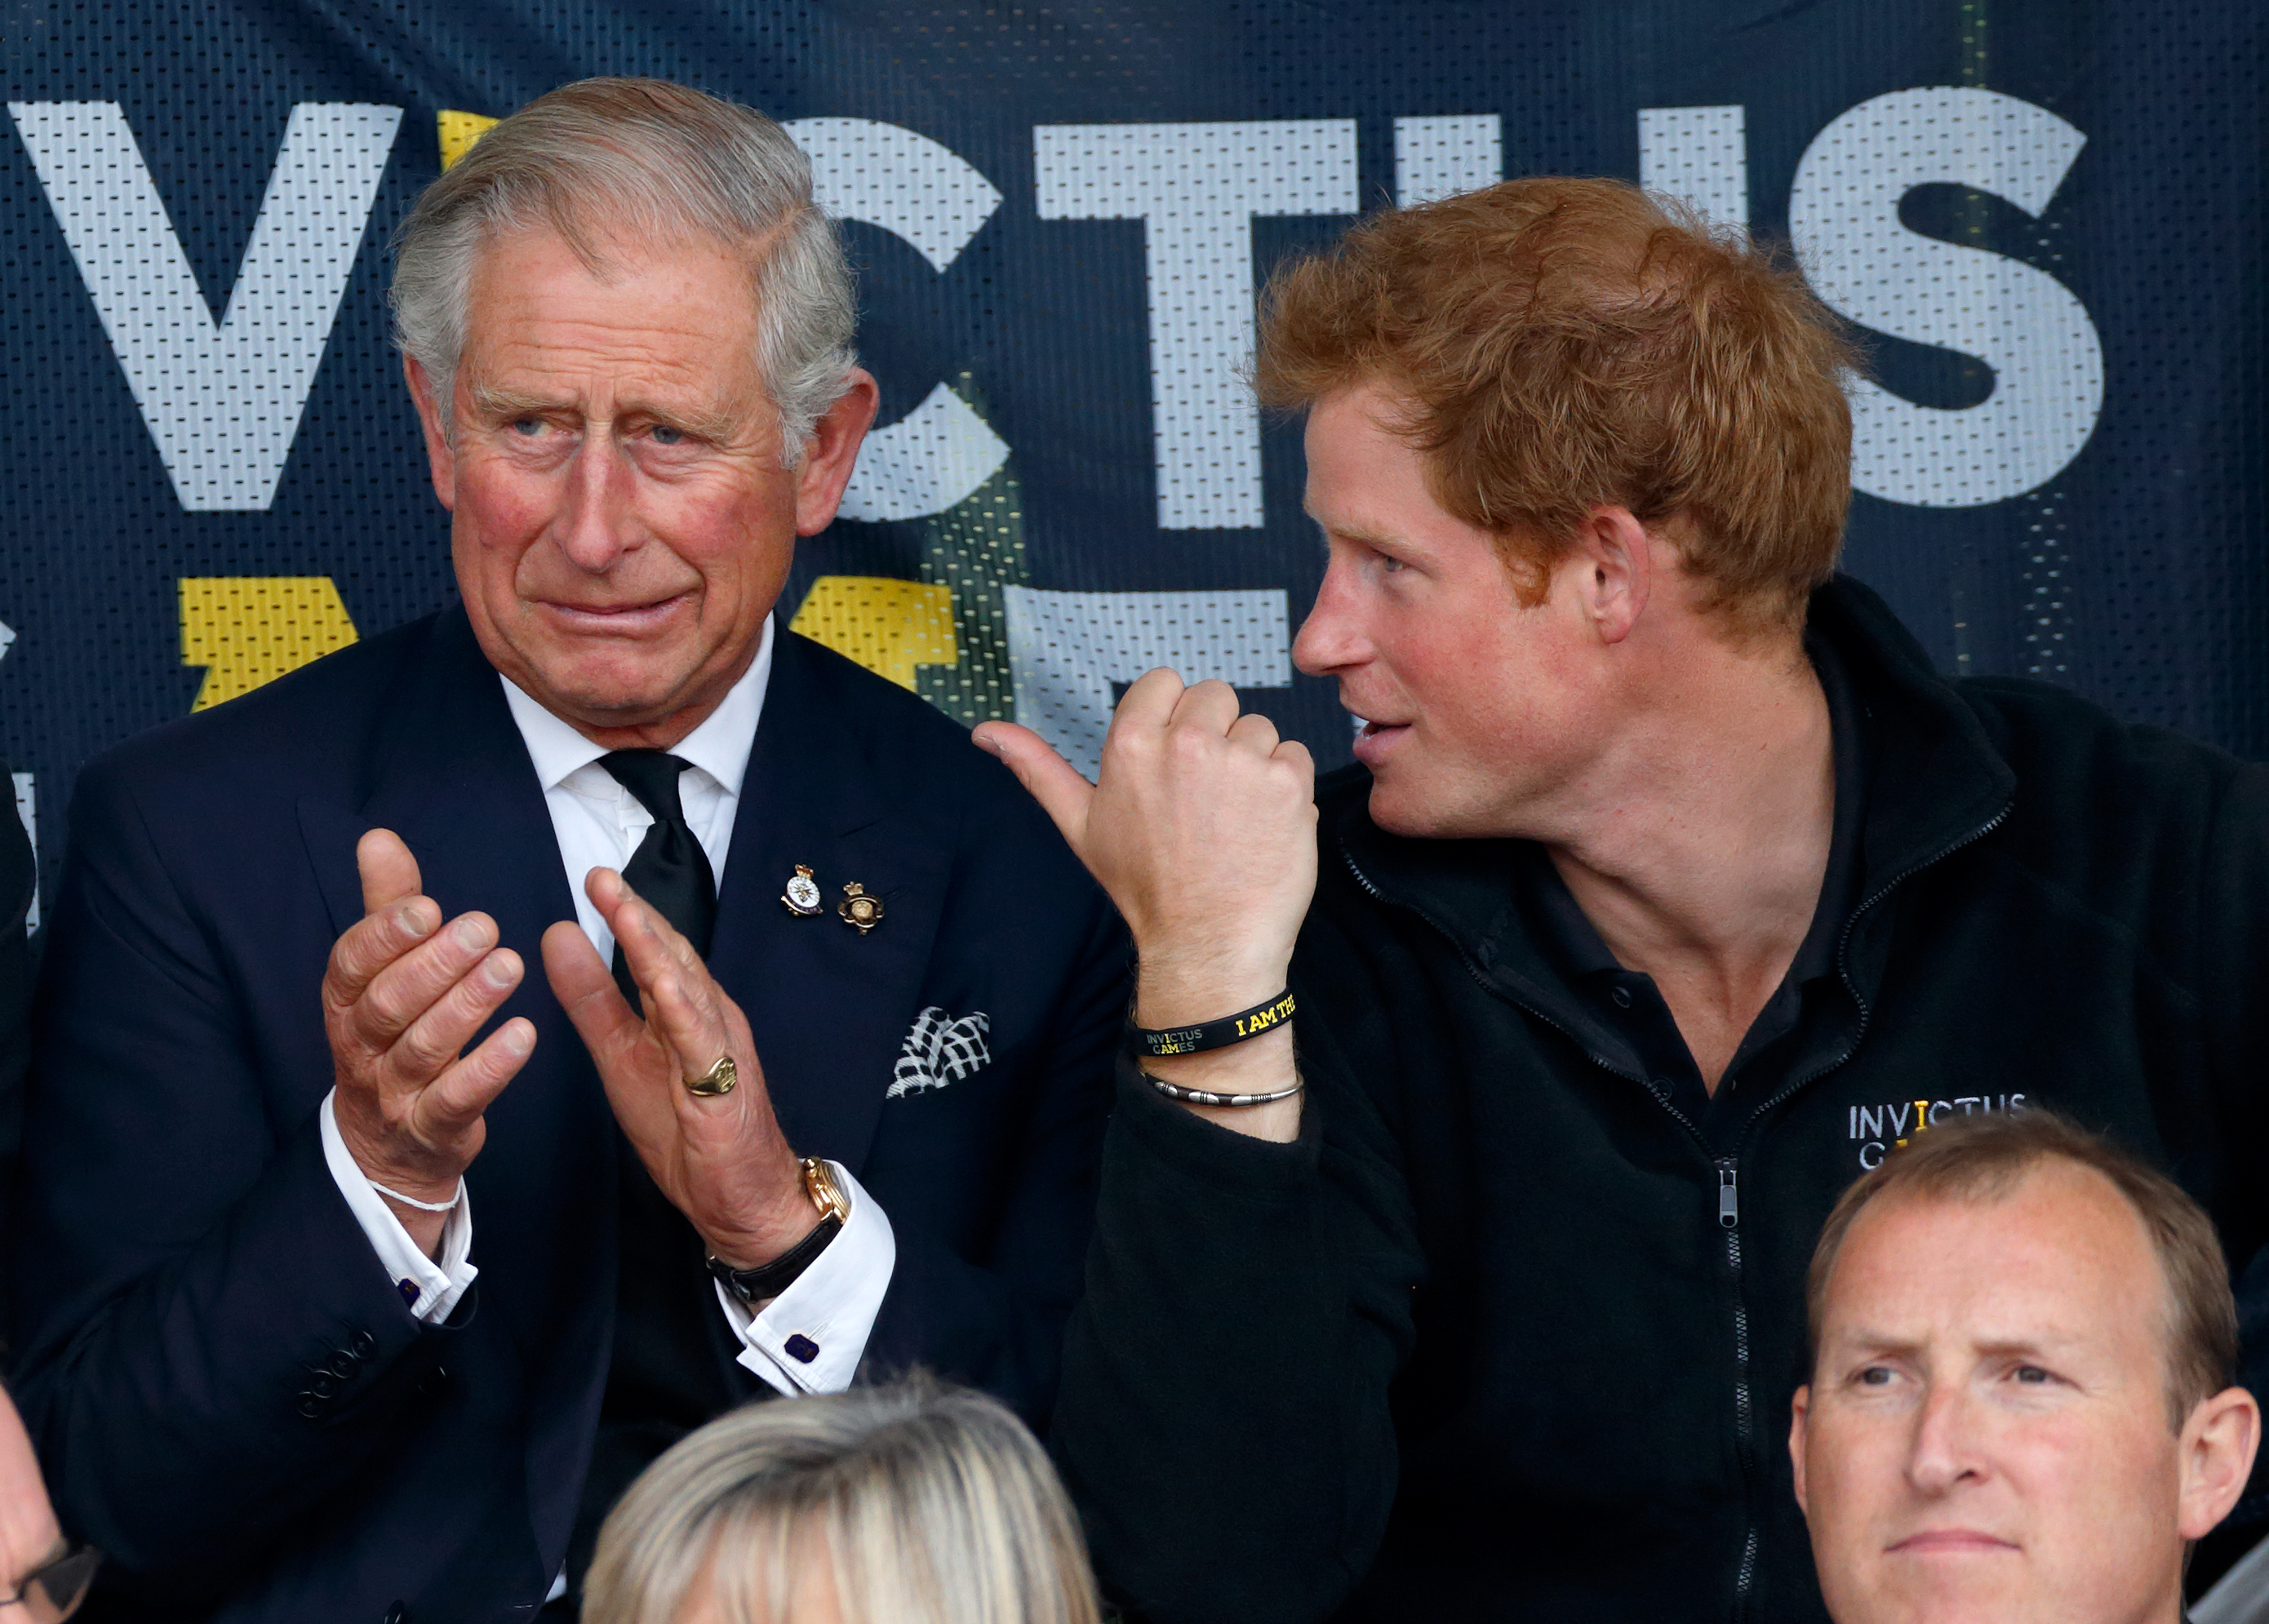 El rey Charles III y el príncipe Harry durante los Juegos Invictus en Londres, Inglaterra, el 11 de septiembre de 2014 | Fuente: Getty Images